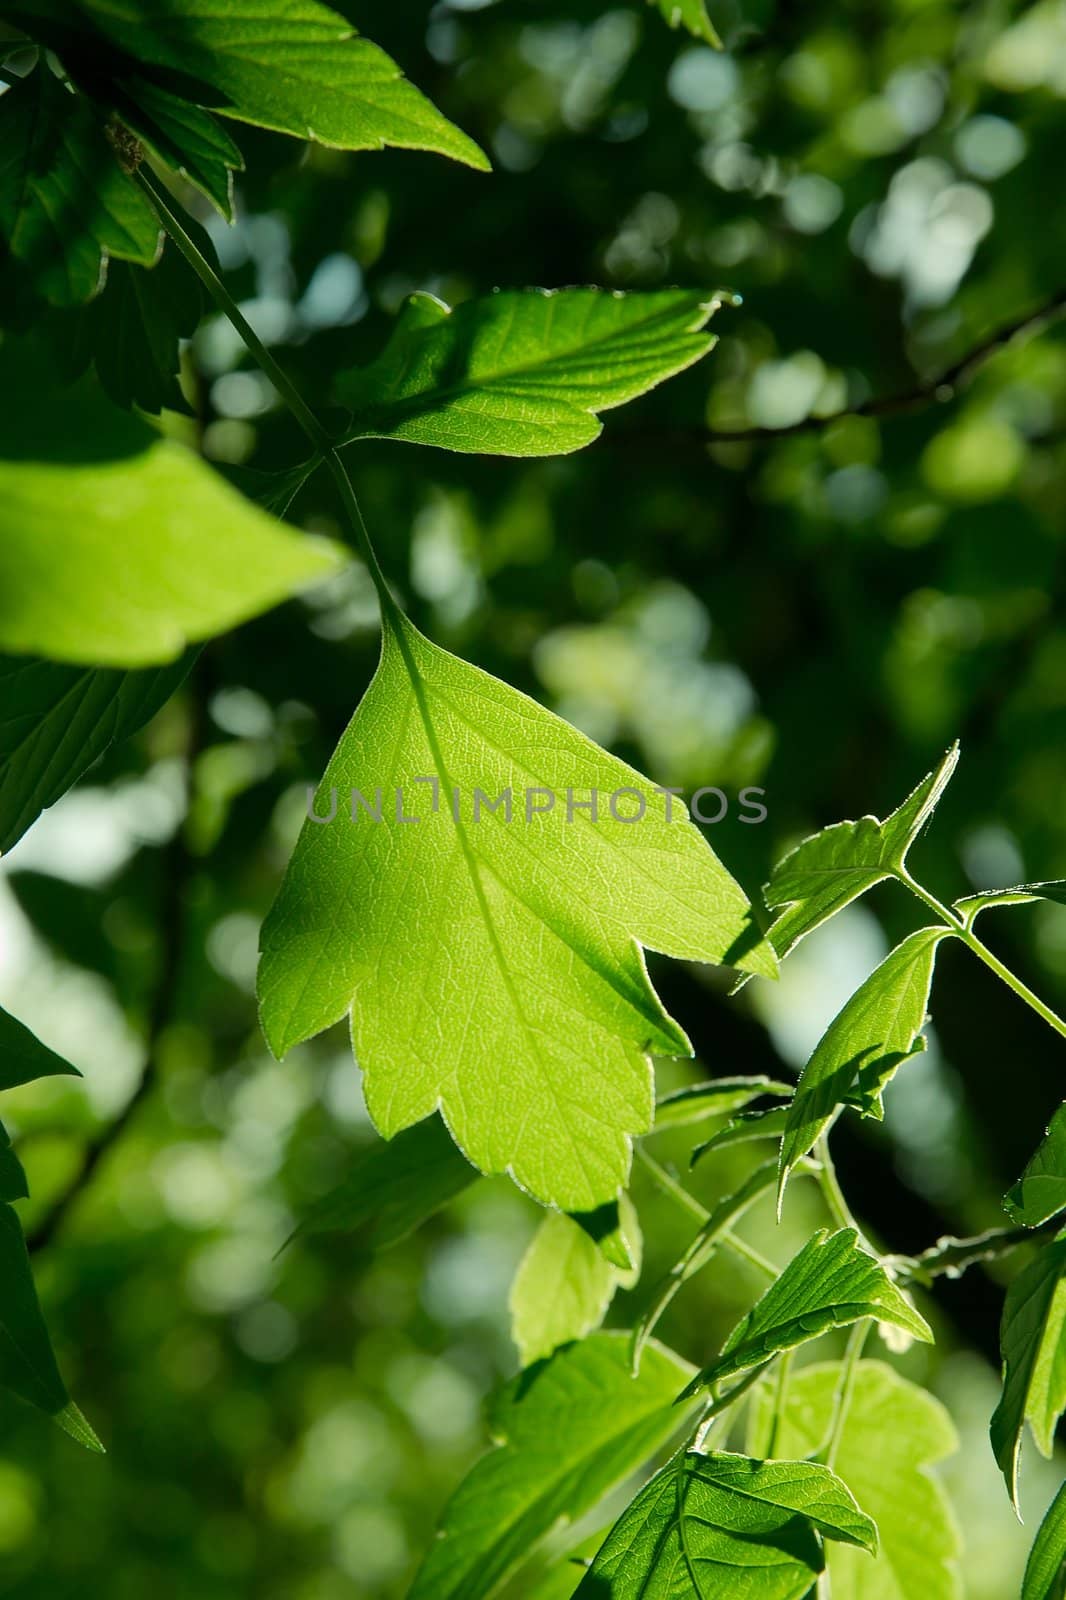 Leaf by Gudella